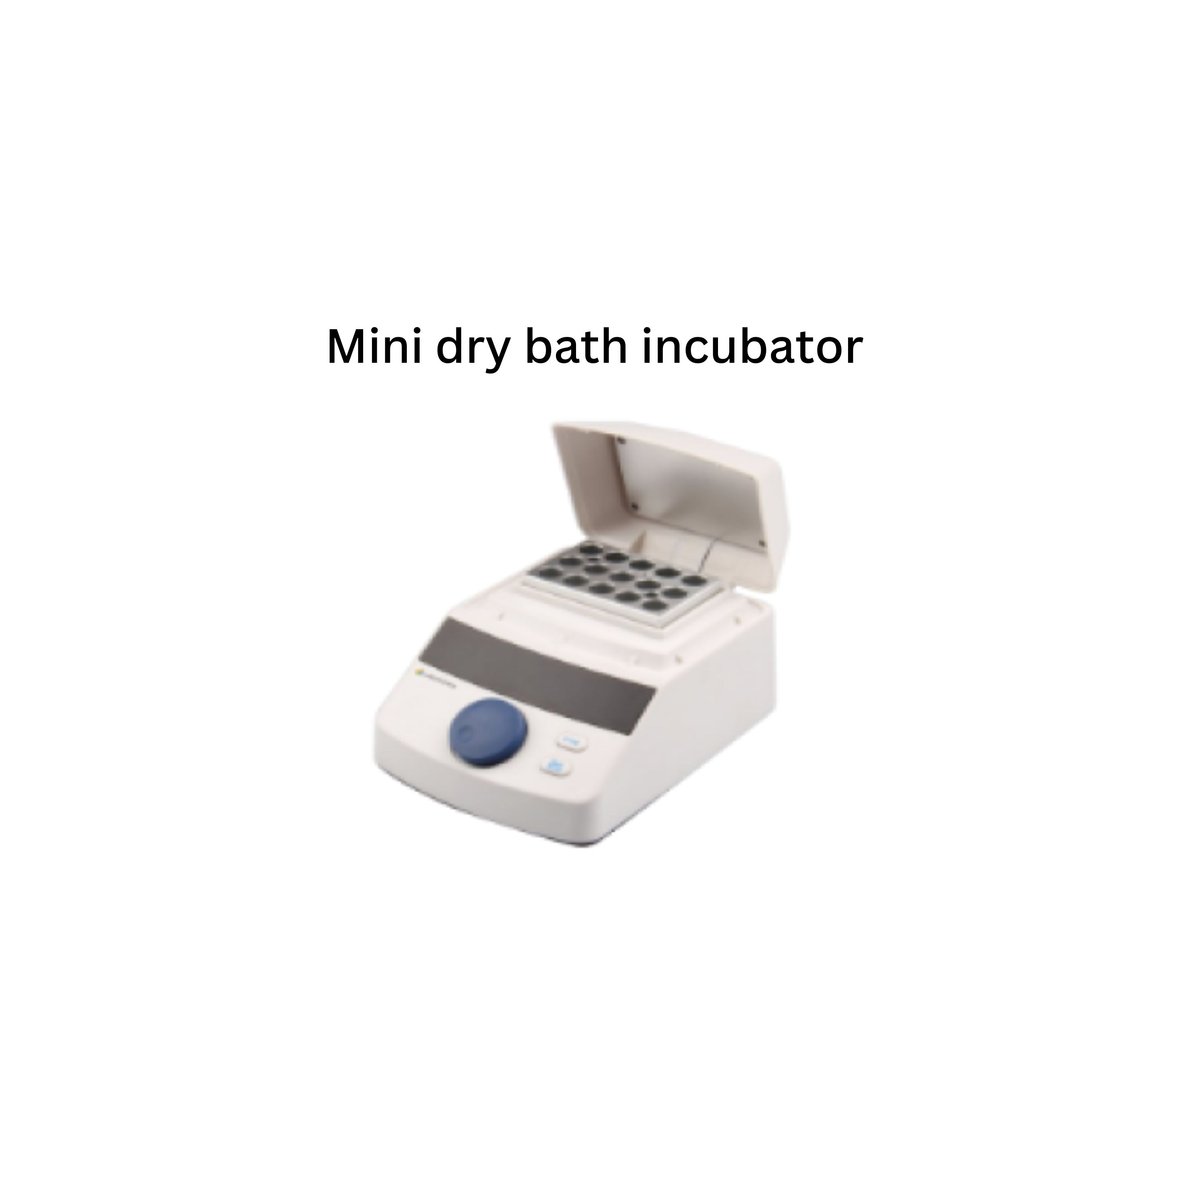 Mini dry bath incubator .jpg